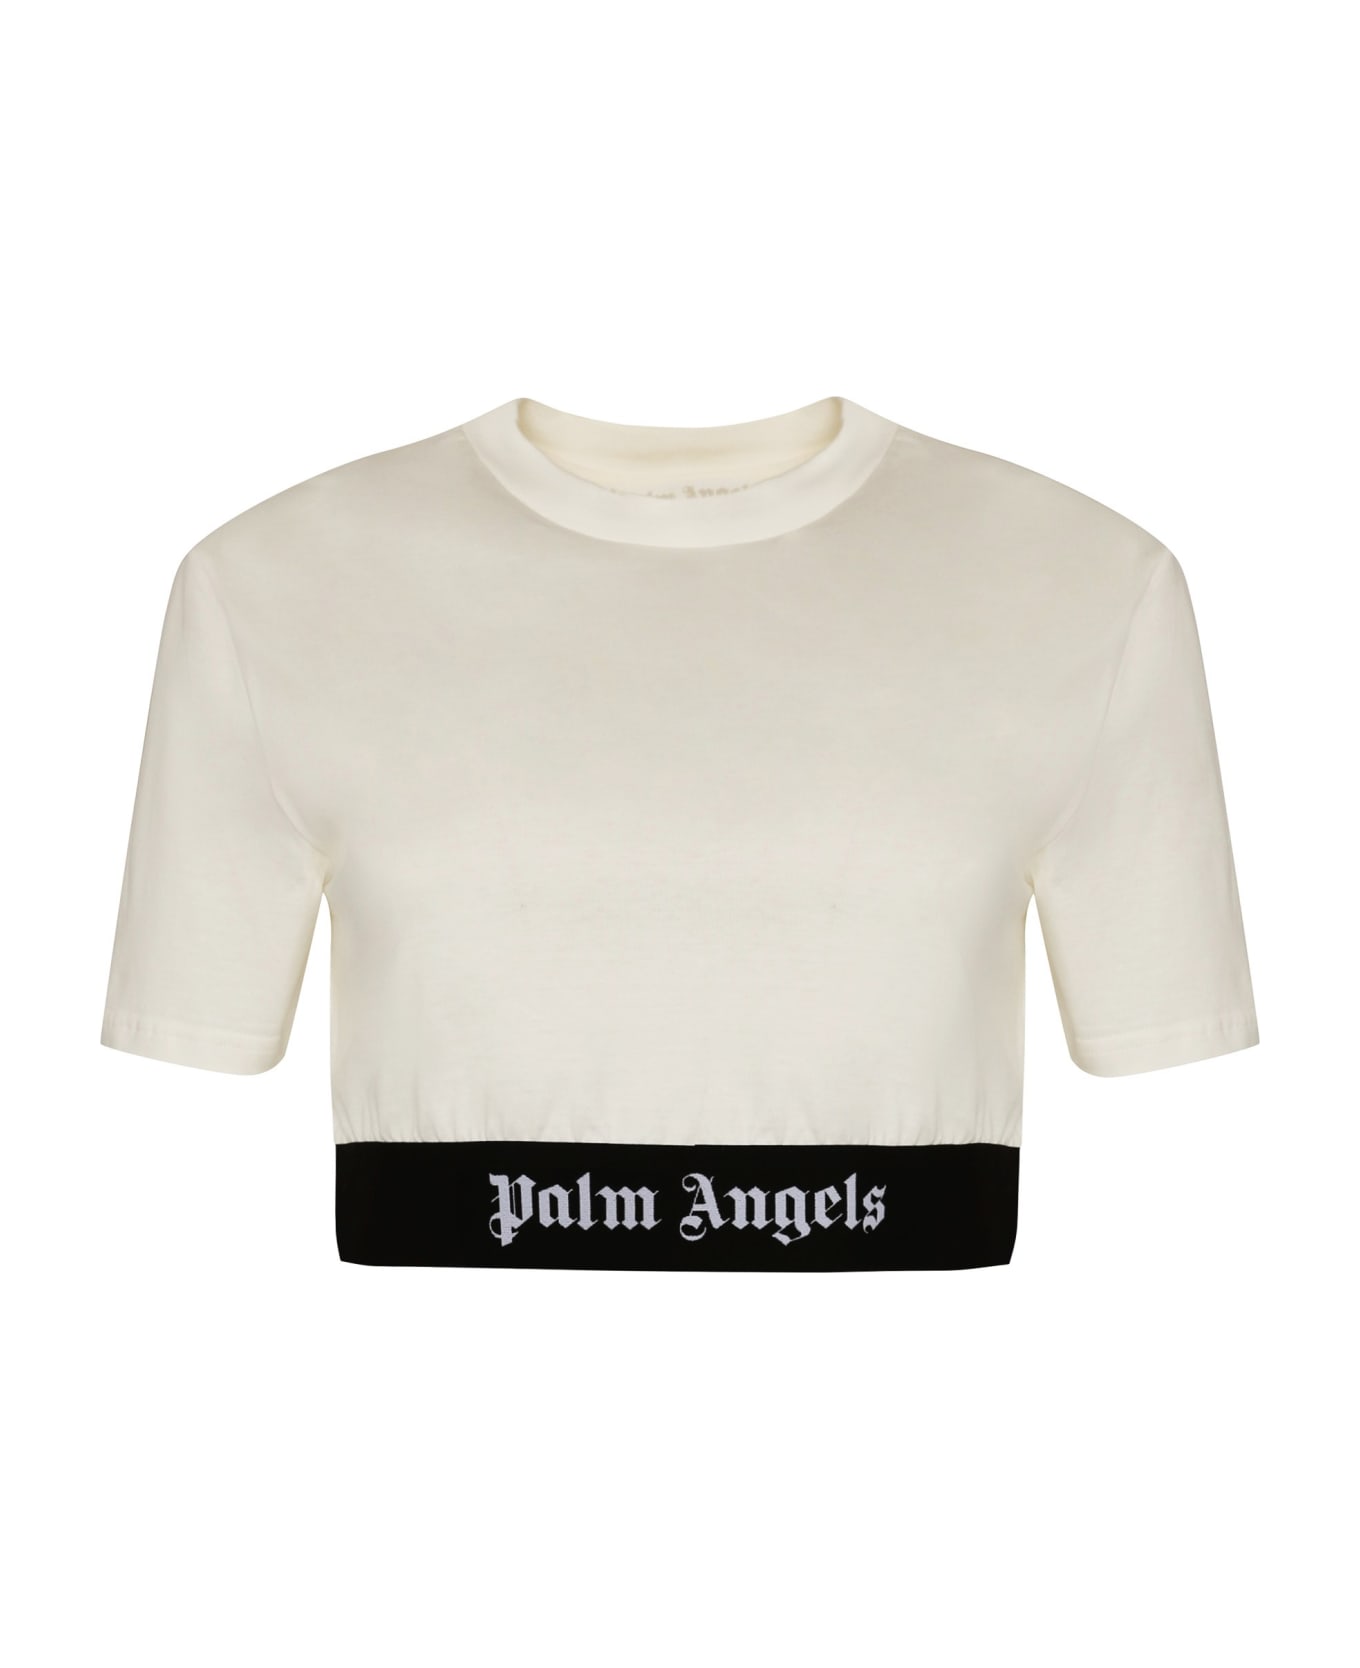 Palm Angels Cotton Crop Top - Beige Tシャツ